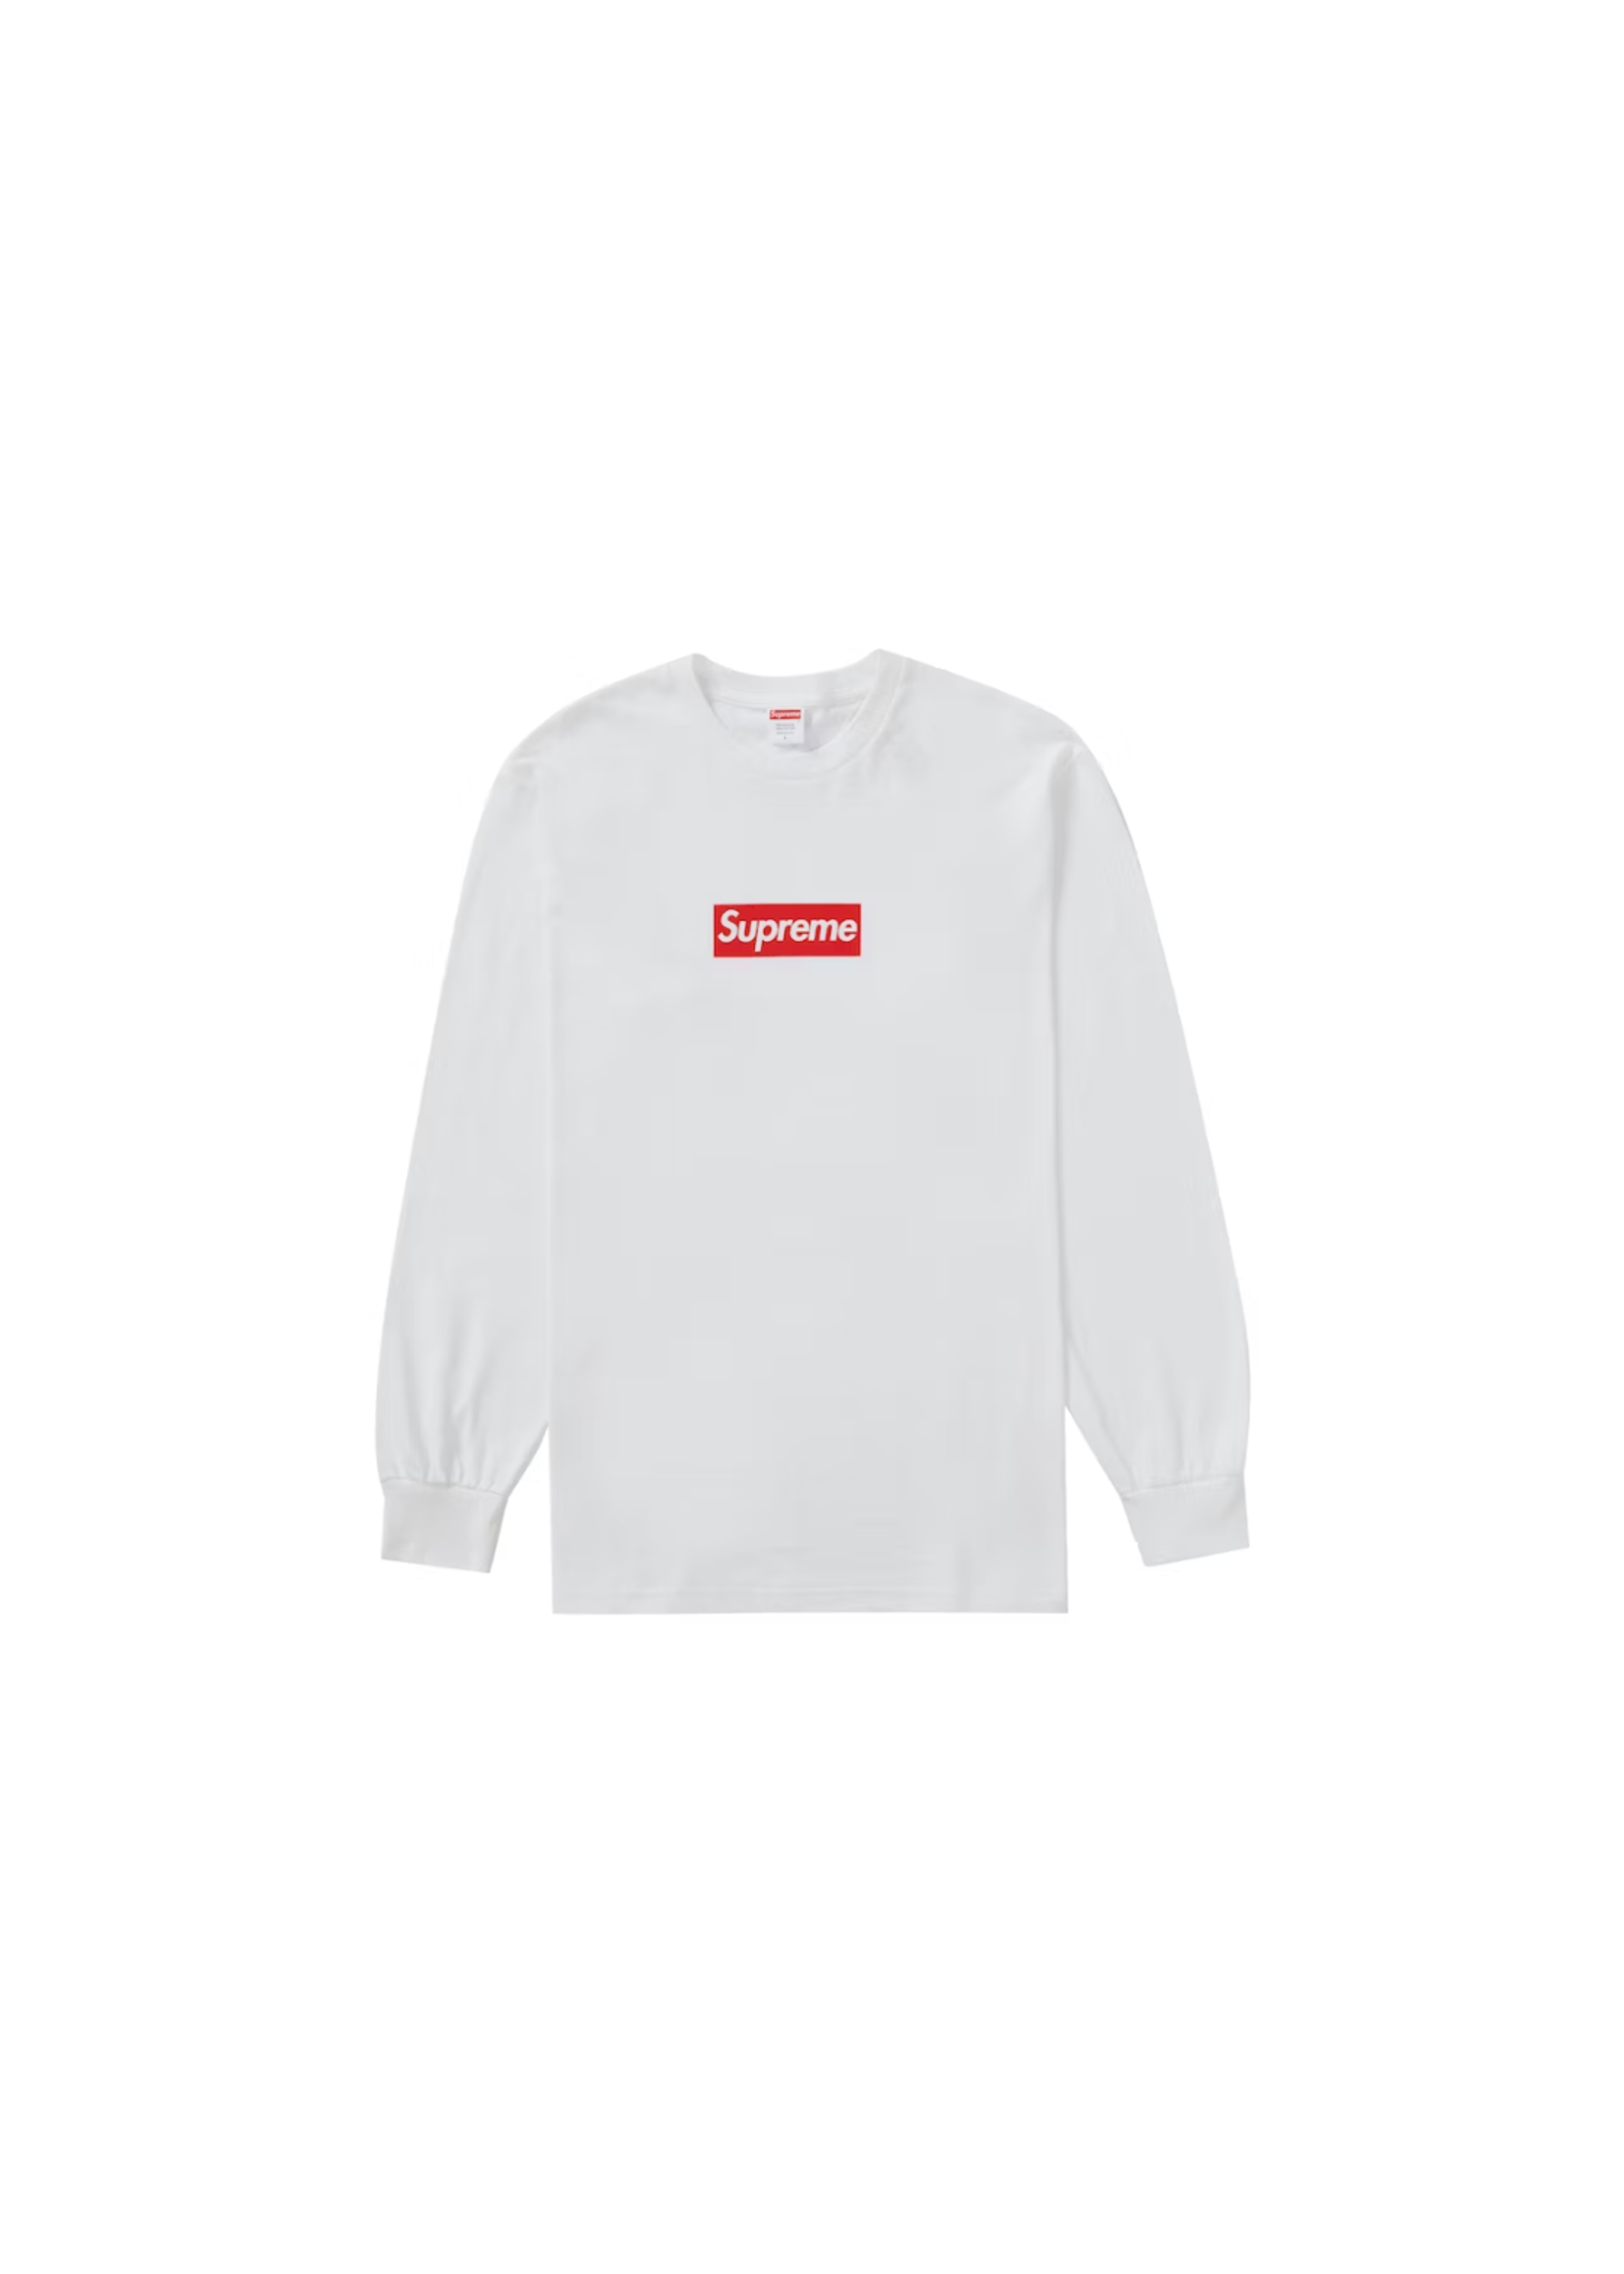 Supreme box logo tee “white” Lシャツ